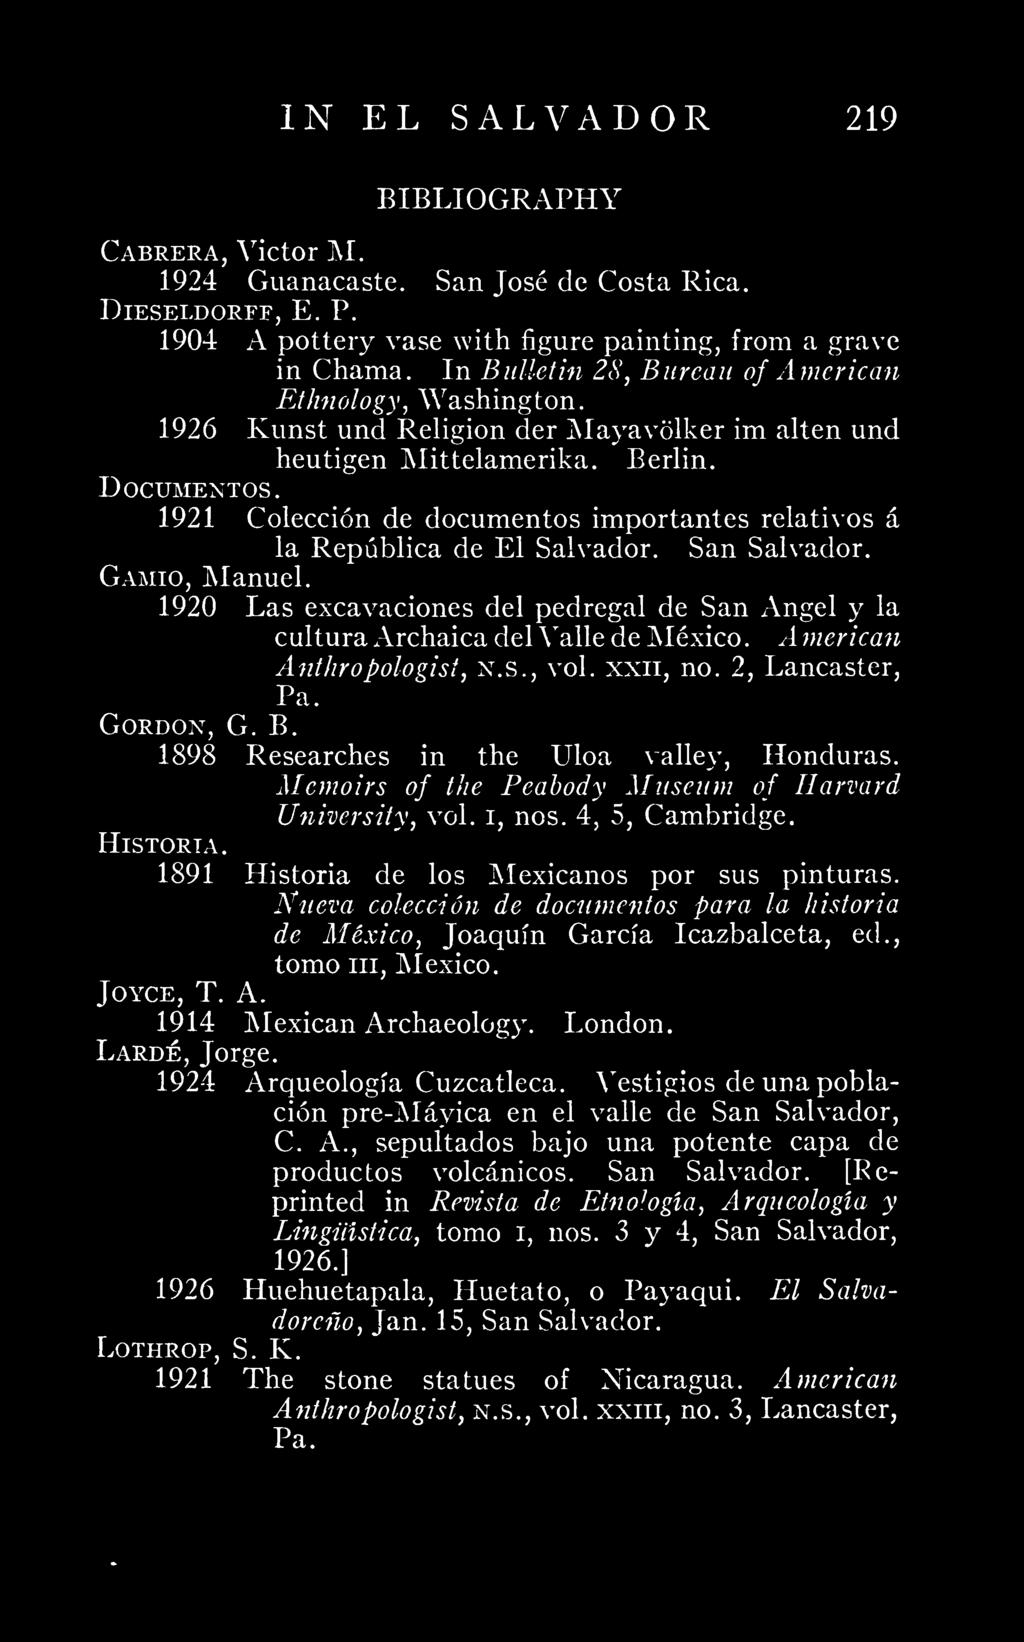 1921 Coleccion de documentos importantes relatives a la Republica de El Salvador. San Salvador. Gamio, Manuel.